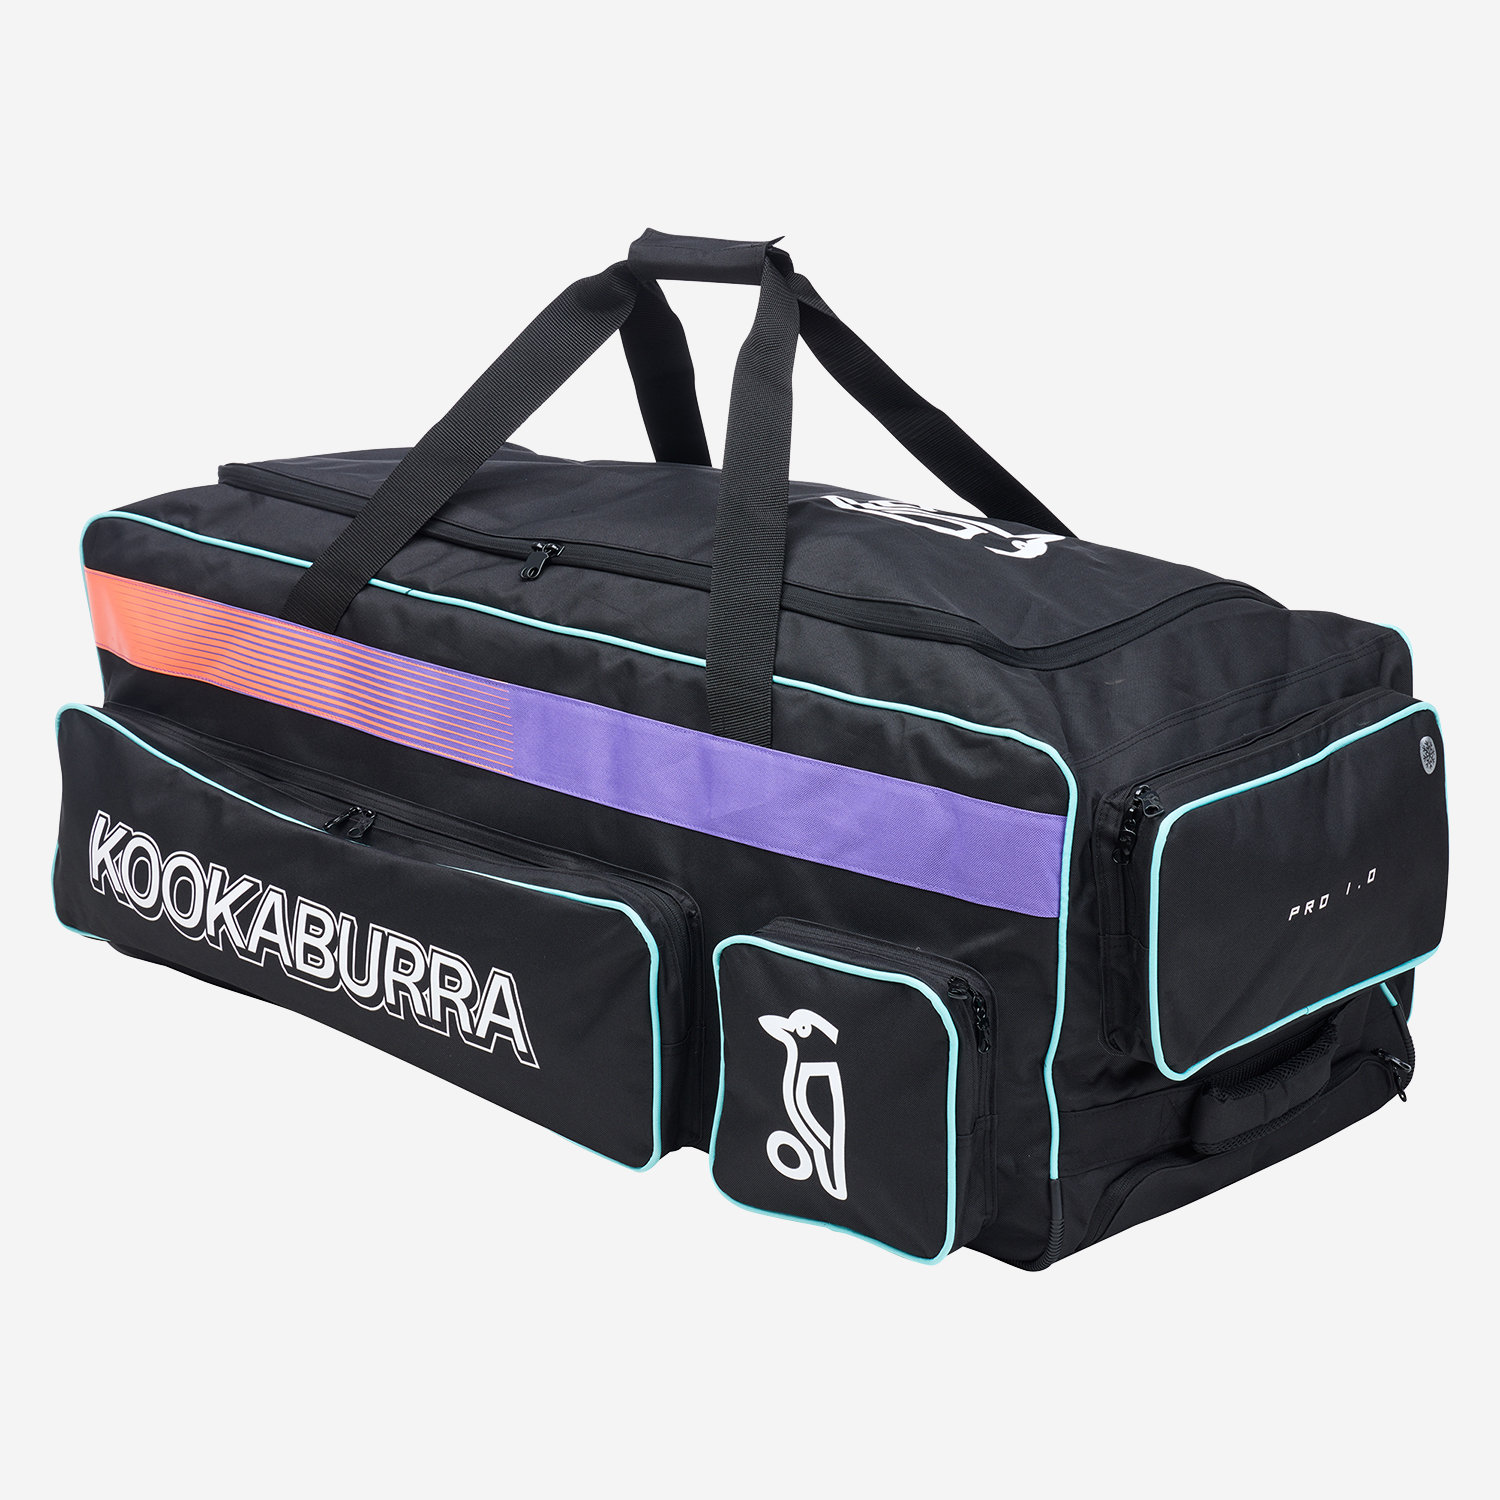 Pro 1.0 Aura Bag